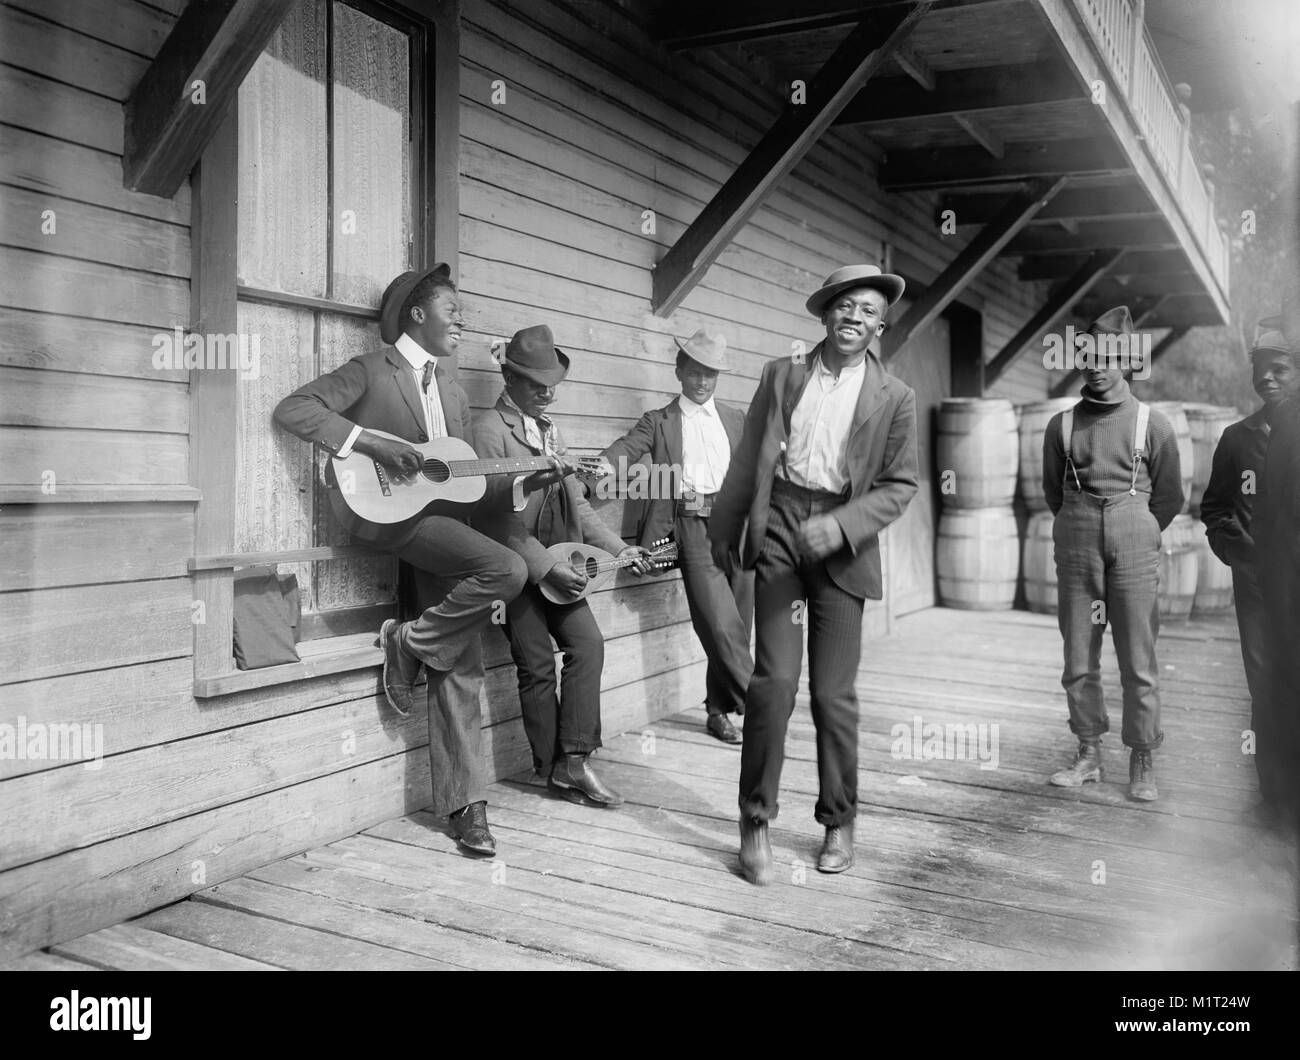 Groupe d'hommes jouant de la musique et de la danse sur le porche, 'en attendant le bateau' Dimanche, William Henry Jackson pour Detroit Publishing Company, 1902 Banque D'Images